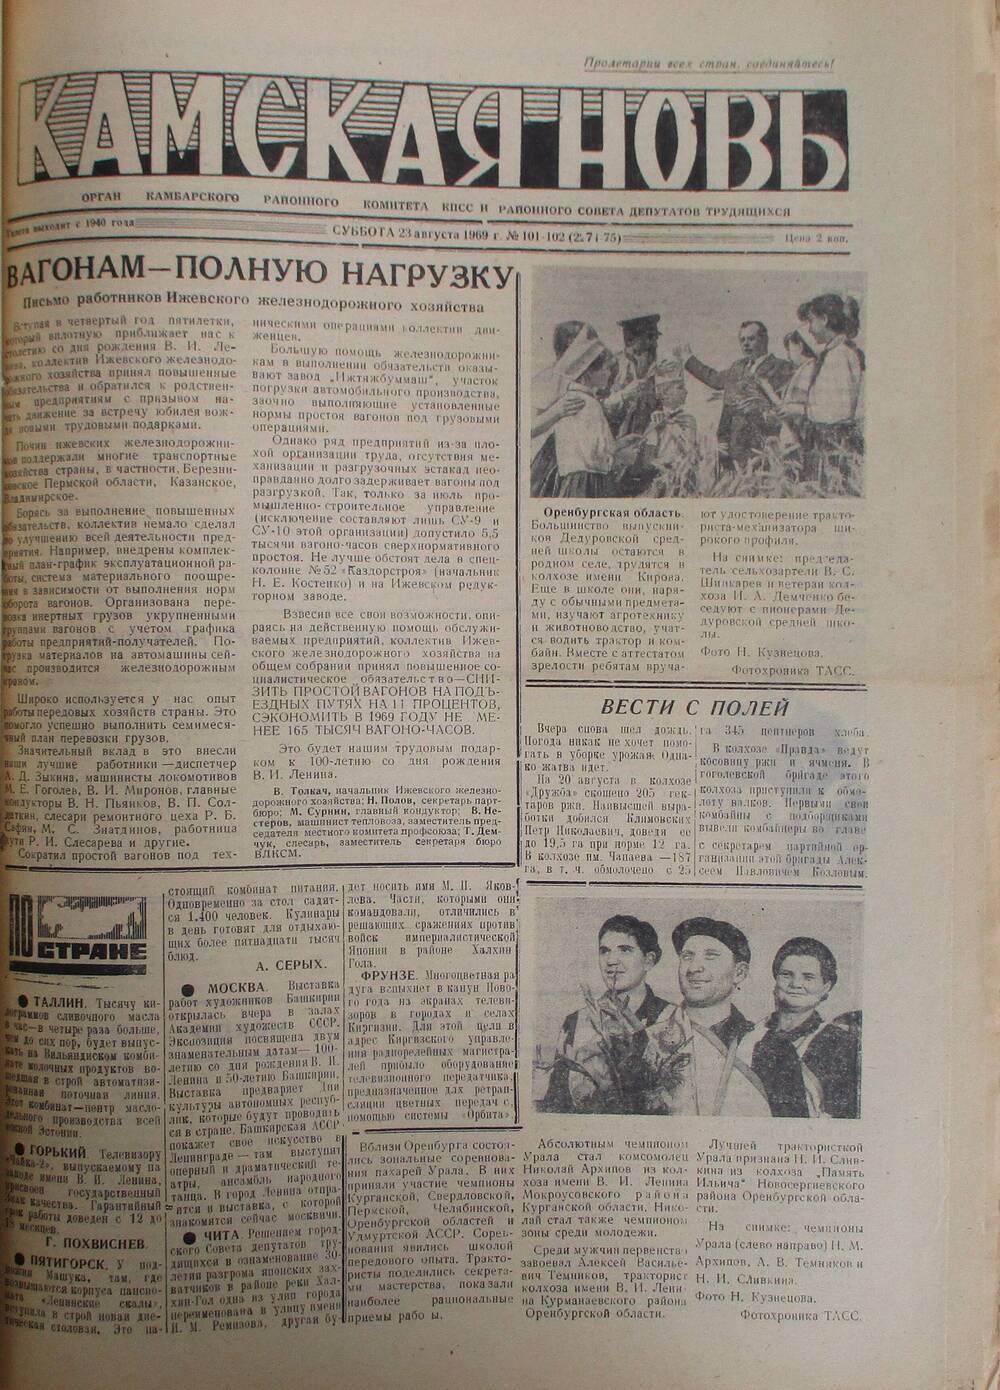 Газеты Камская новь за 1969 год, орган Камбарского райсовета и  РККПСС, с №1 по №66, с №68 по №156. №101-102.